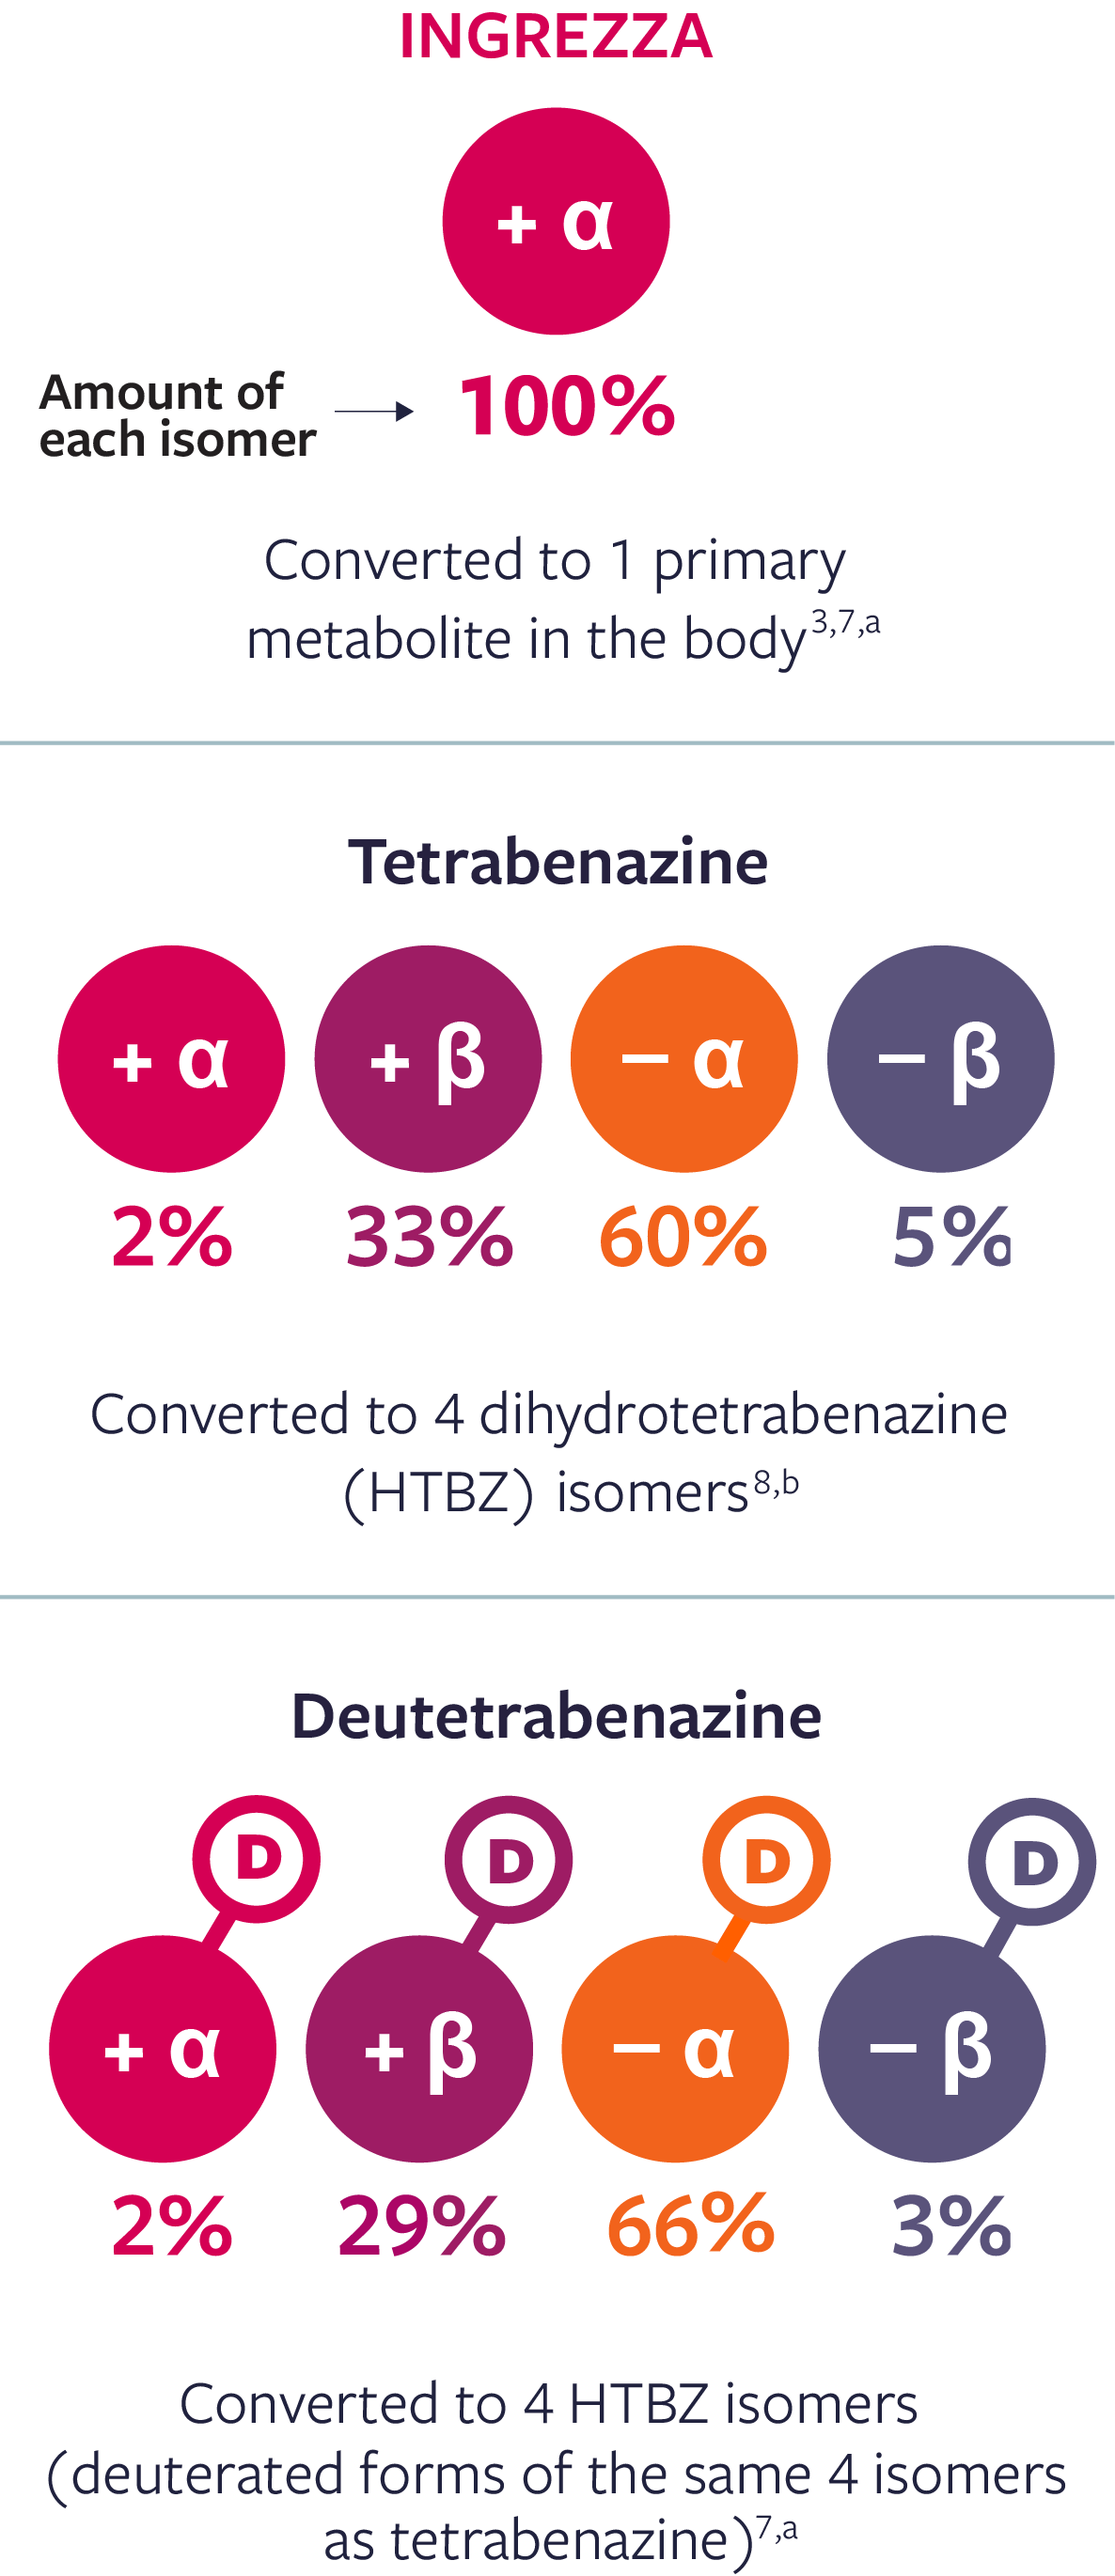 INGREZZA, Tetrabenazine, & Deutetrabenazine to isomer, chart